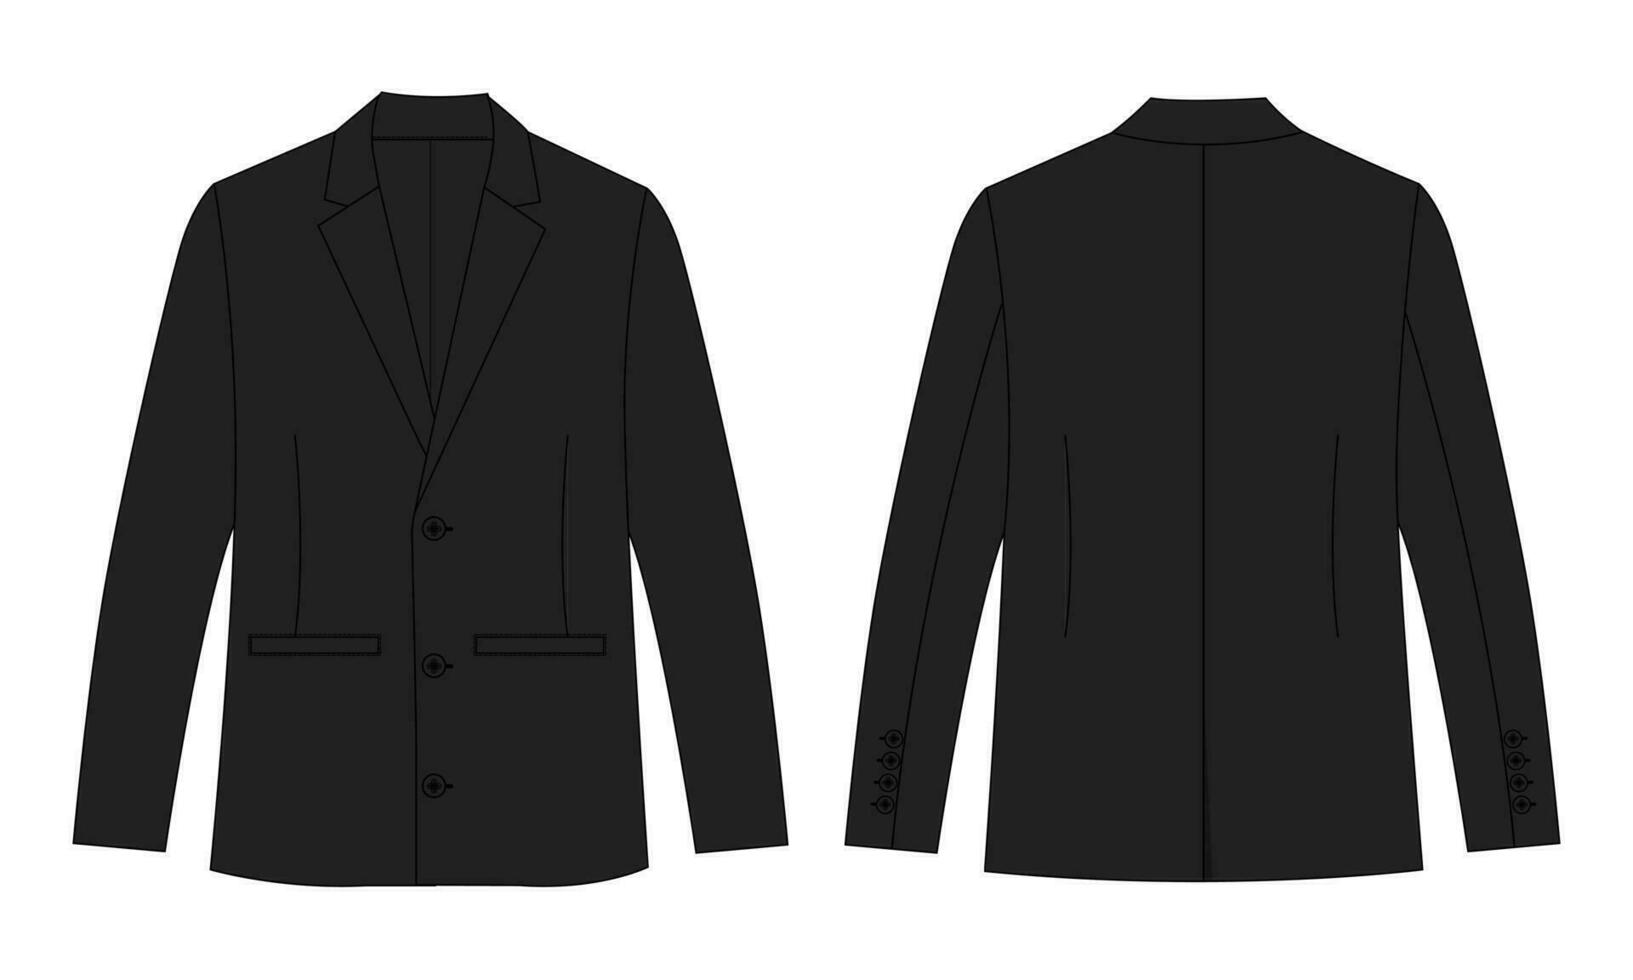 lång ärm svart Färg blazer kostym teknisk teckning mode platt skiss vektor illustration mall främre och tillbaka visningar isolerat på vit bakgrund